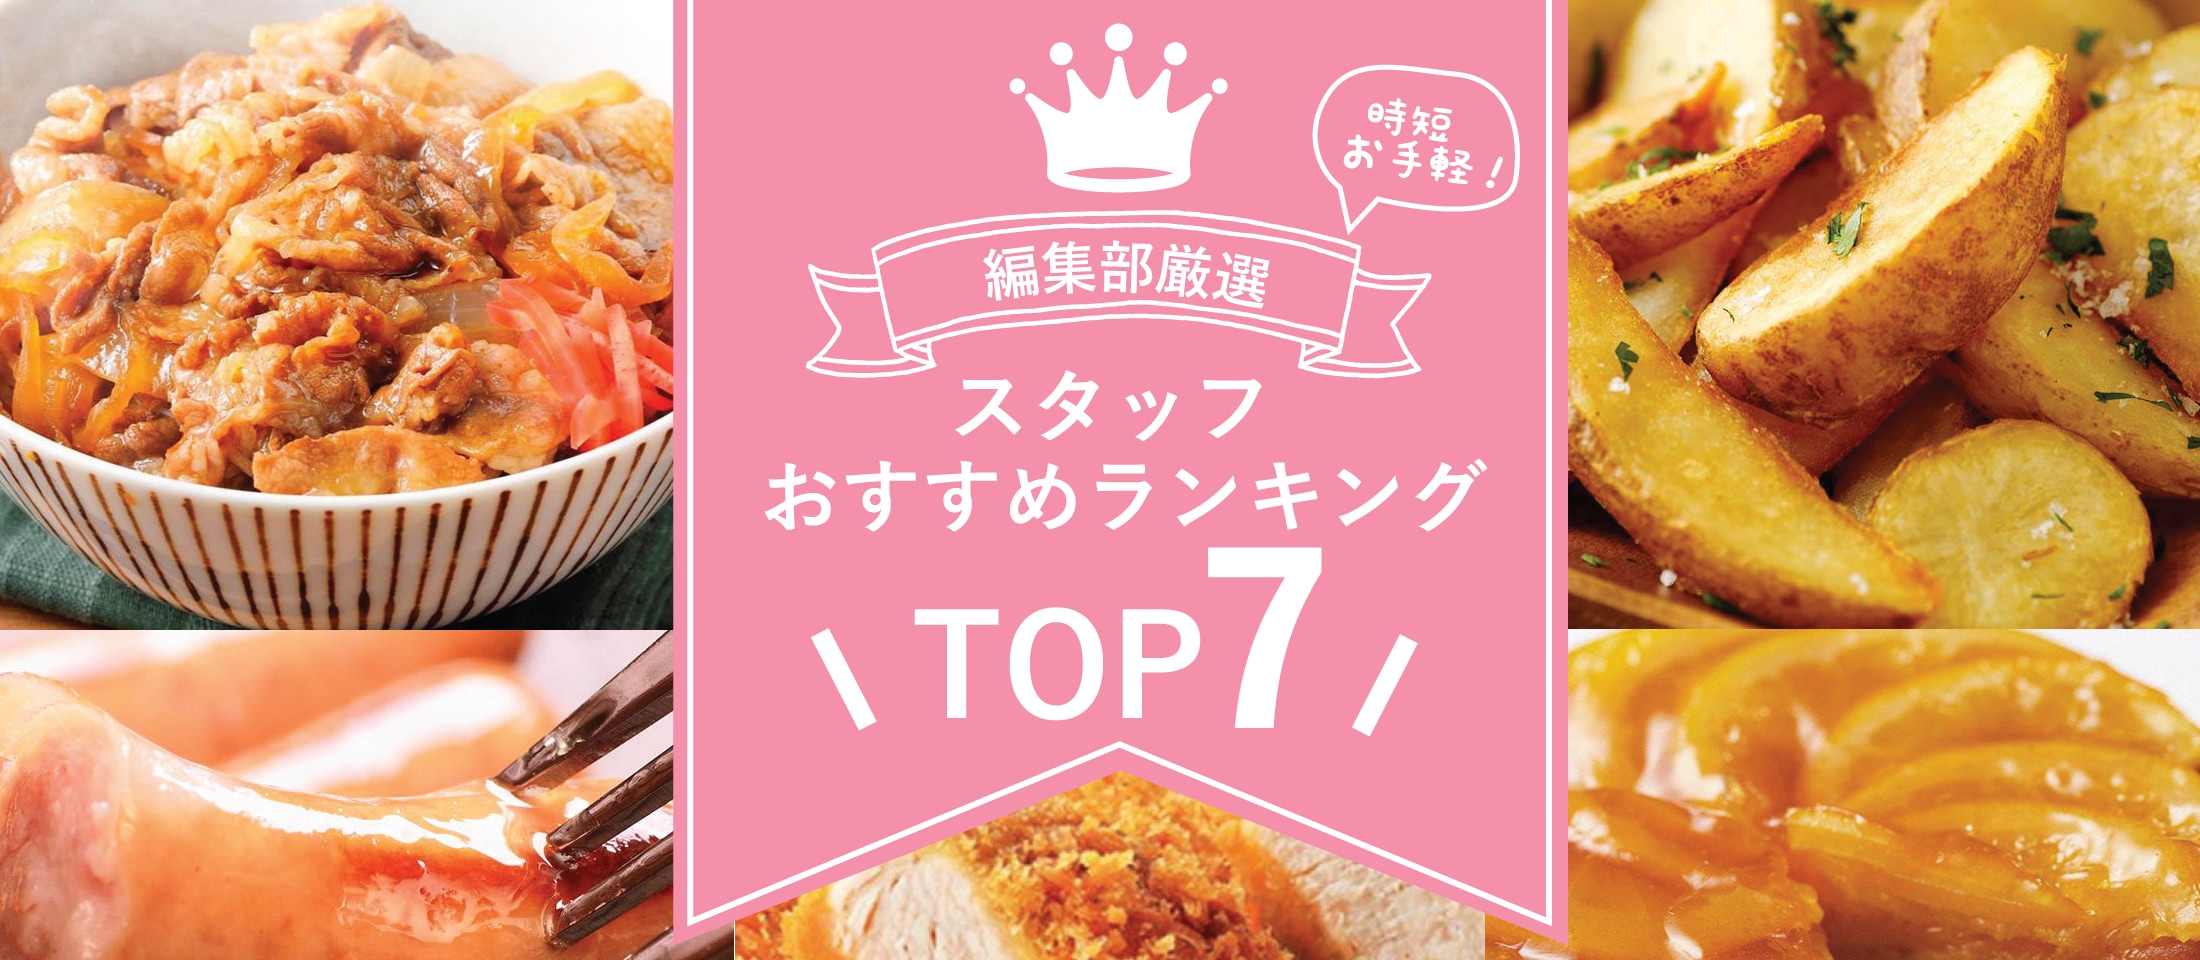 スタッフのおススメ商品TOP7 業務用食品・冷凍食品通販 ナカヤマフーズオンライン